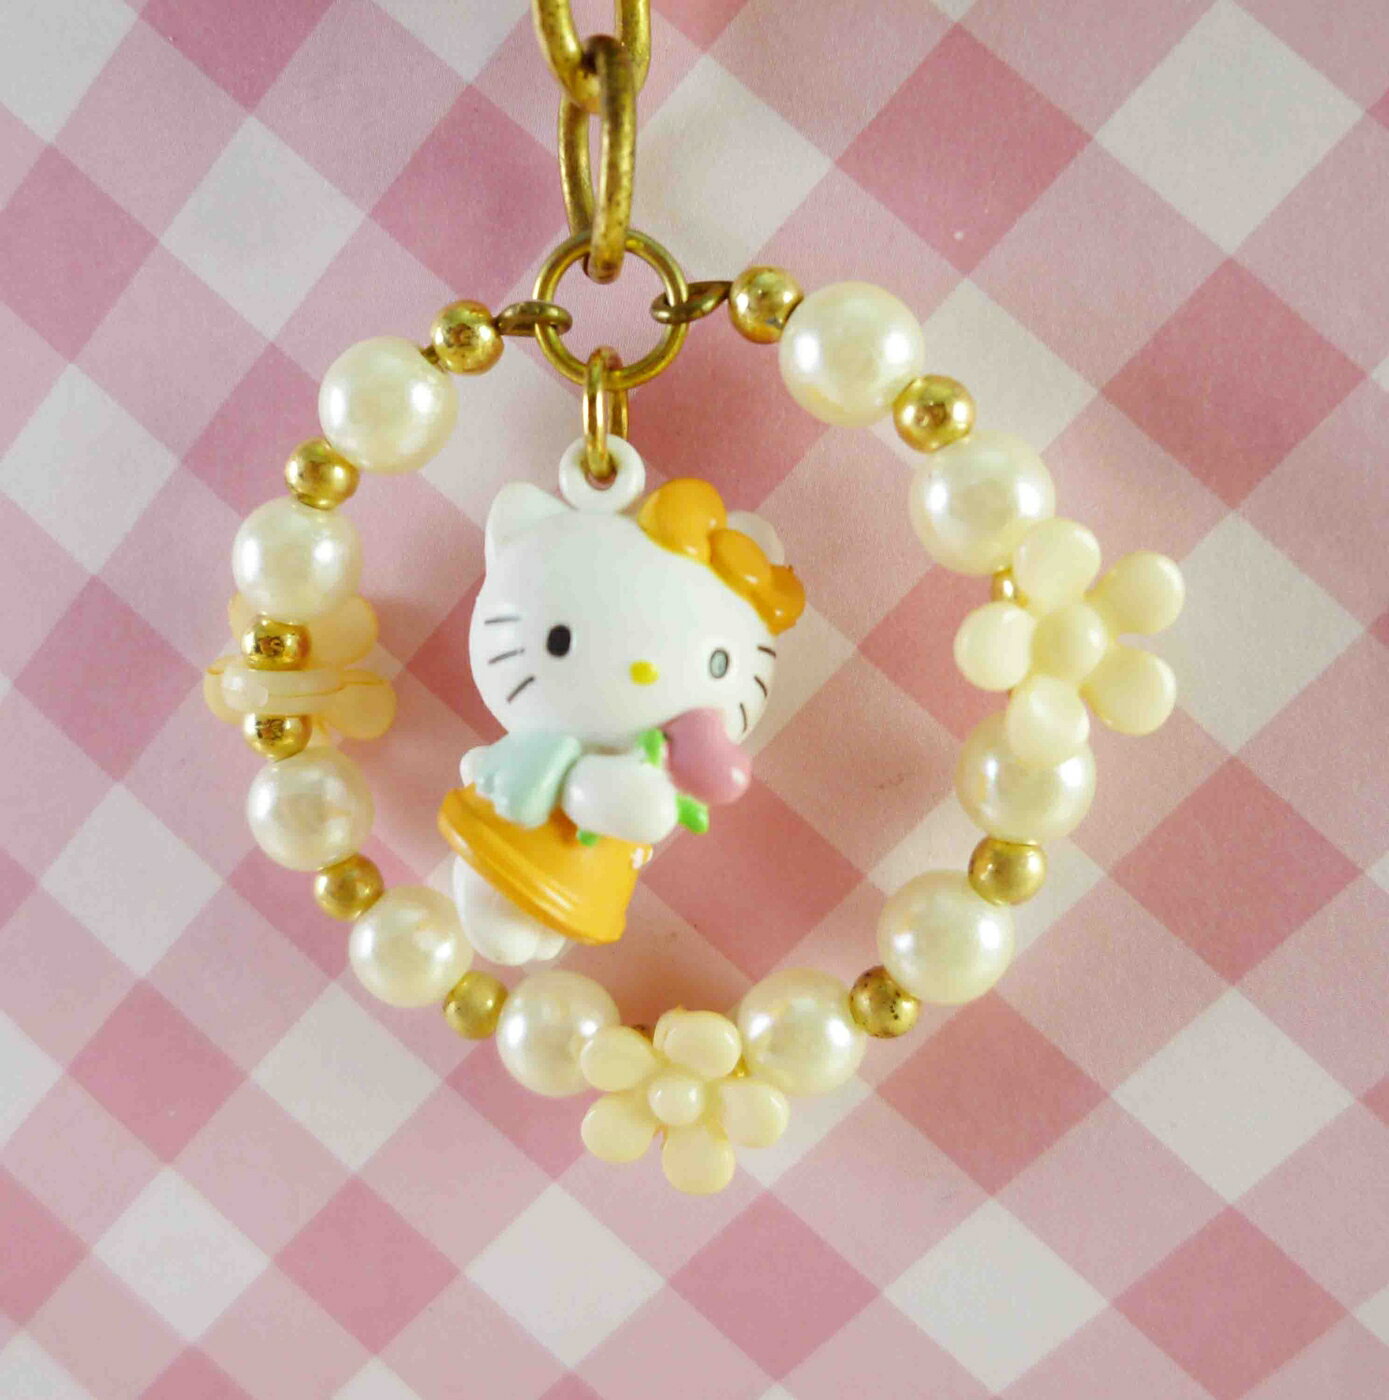 【震撼精品百貨】Hello Kitty 凱蒂貓 KITTY鑰匙圈-圓珠花-橘 震撼日式精品百貨